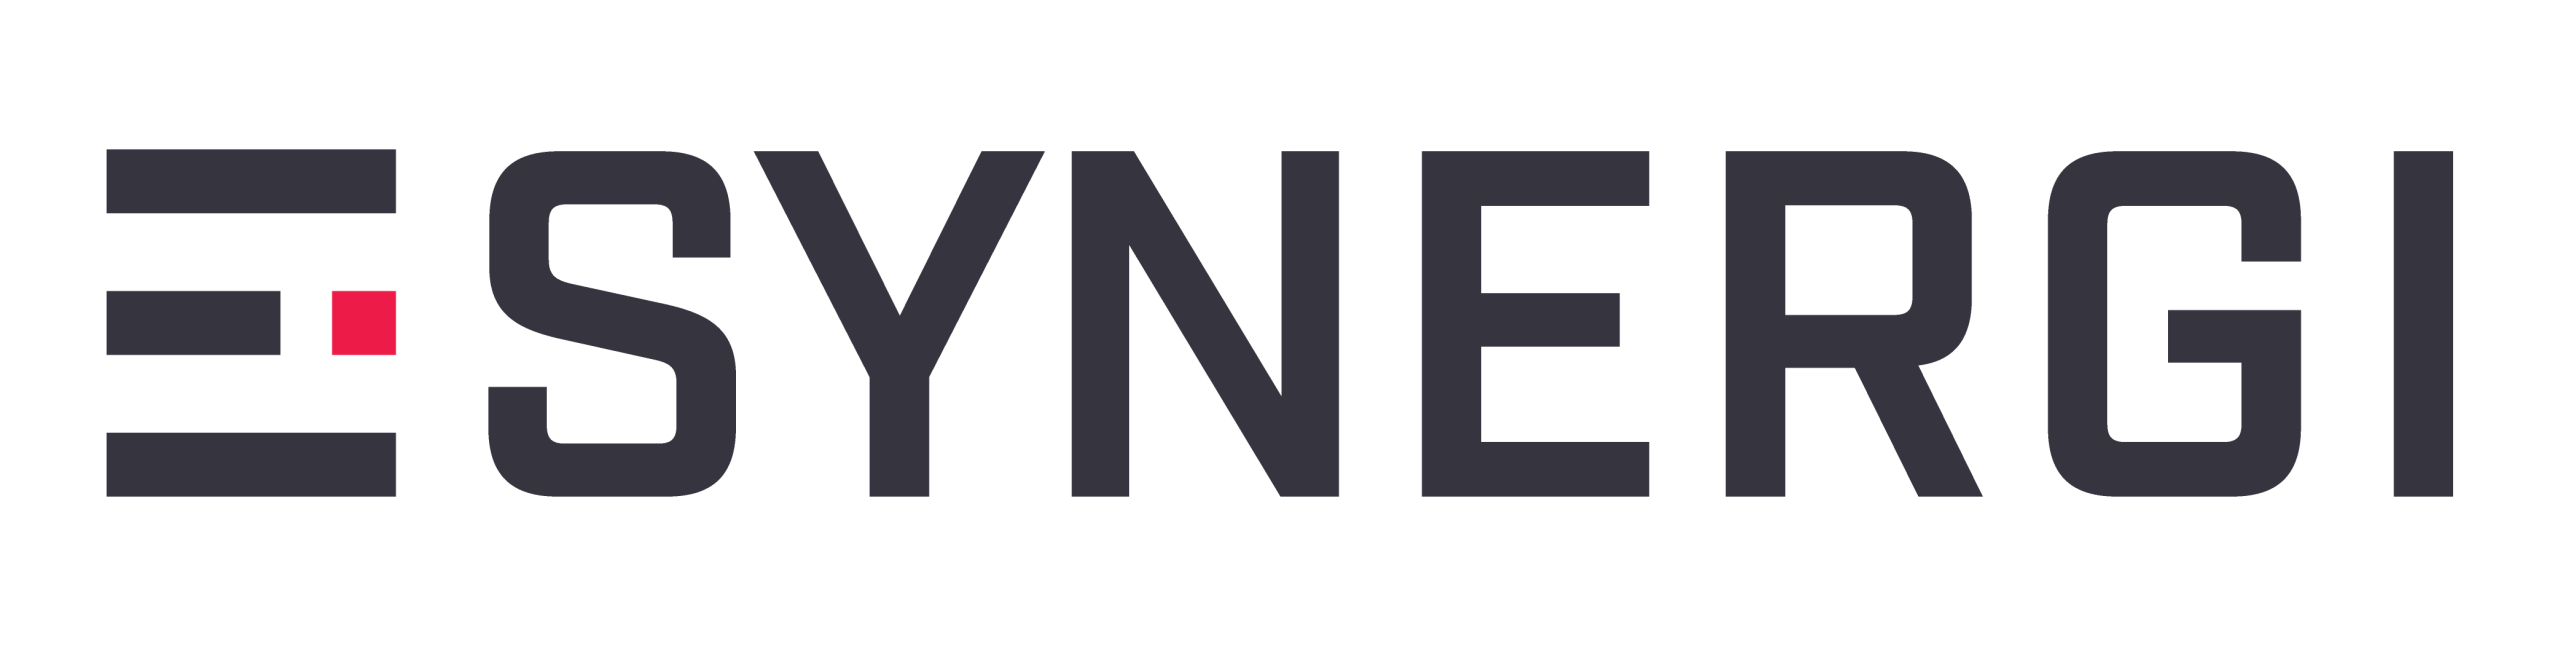 E-synergi logo